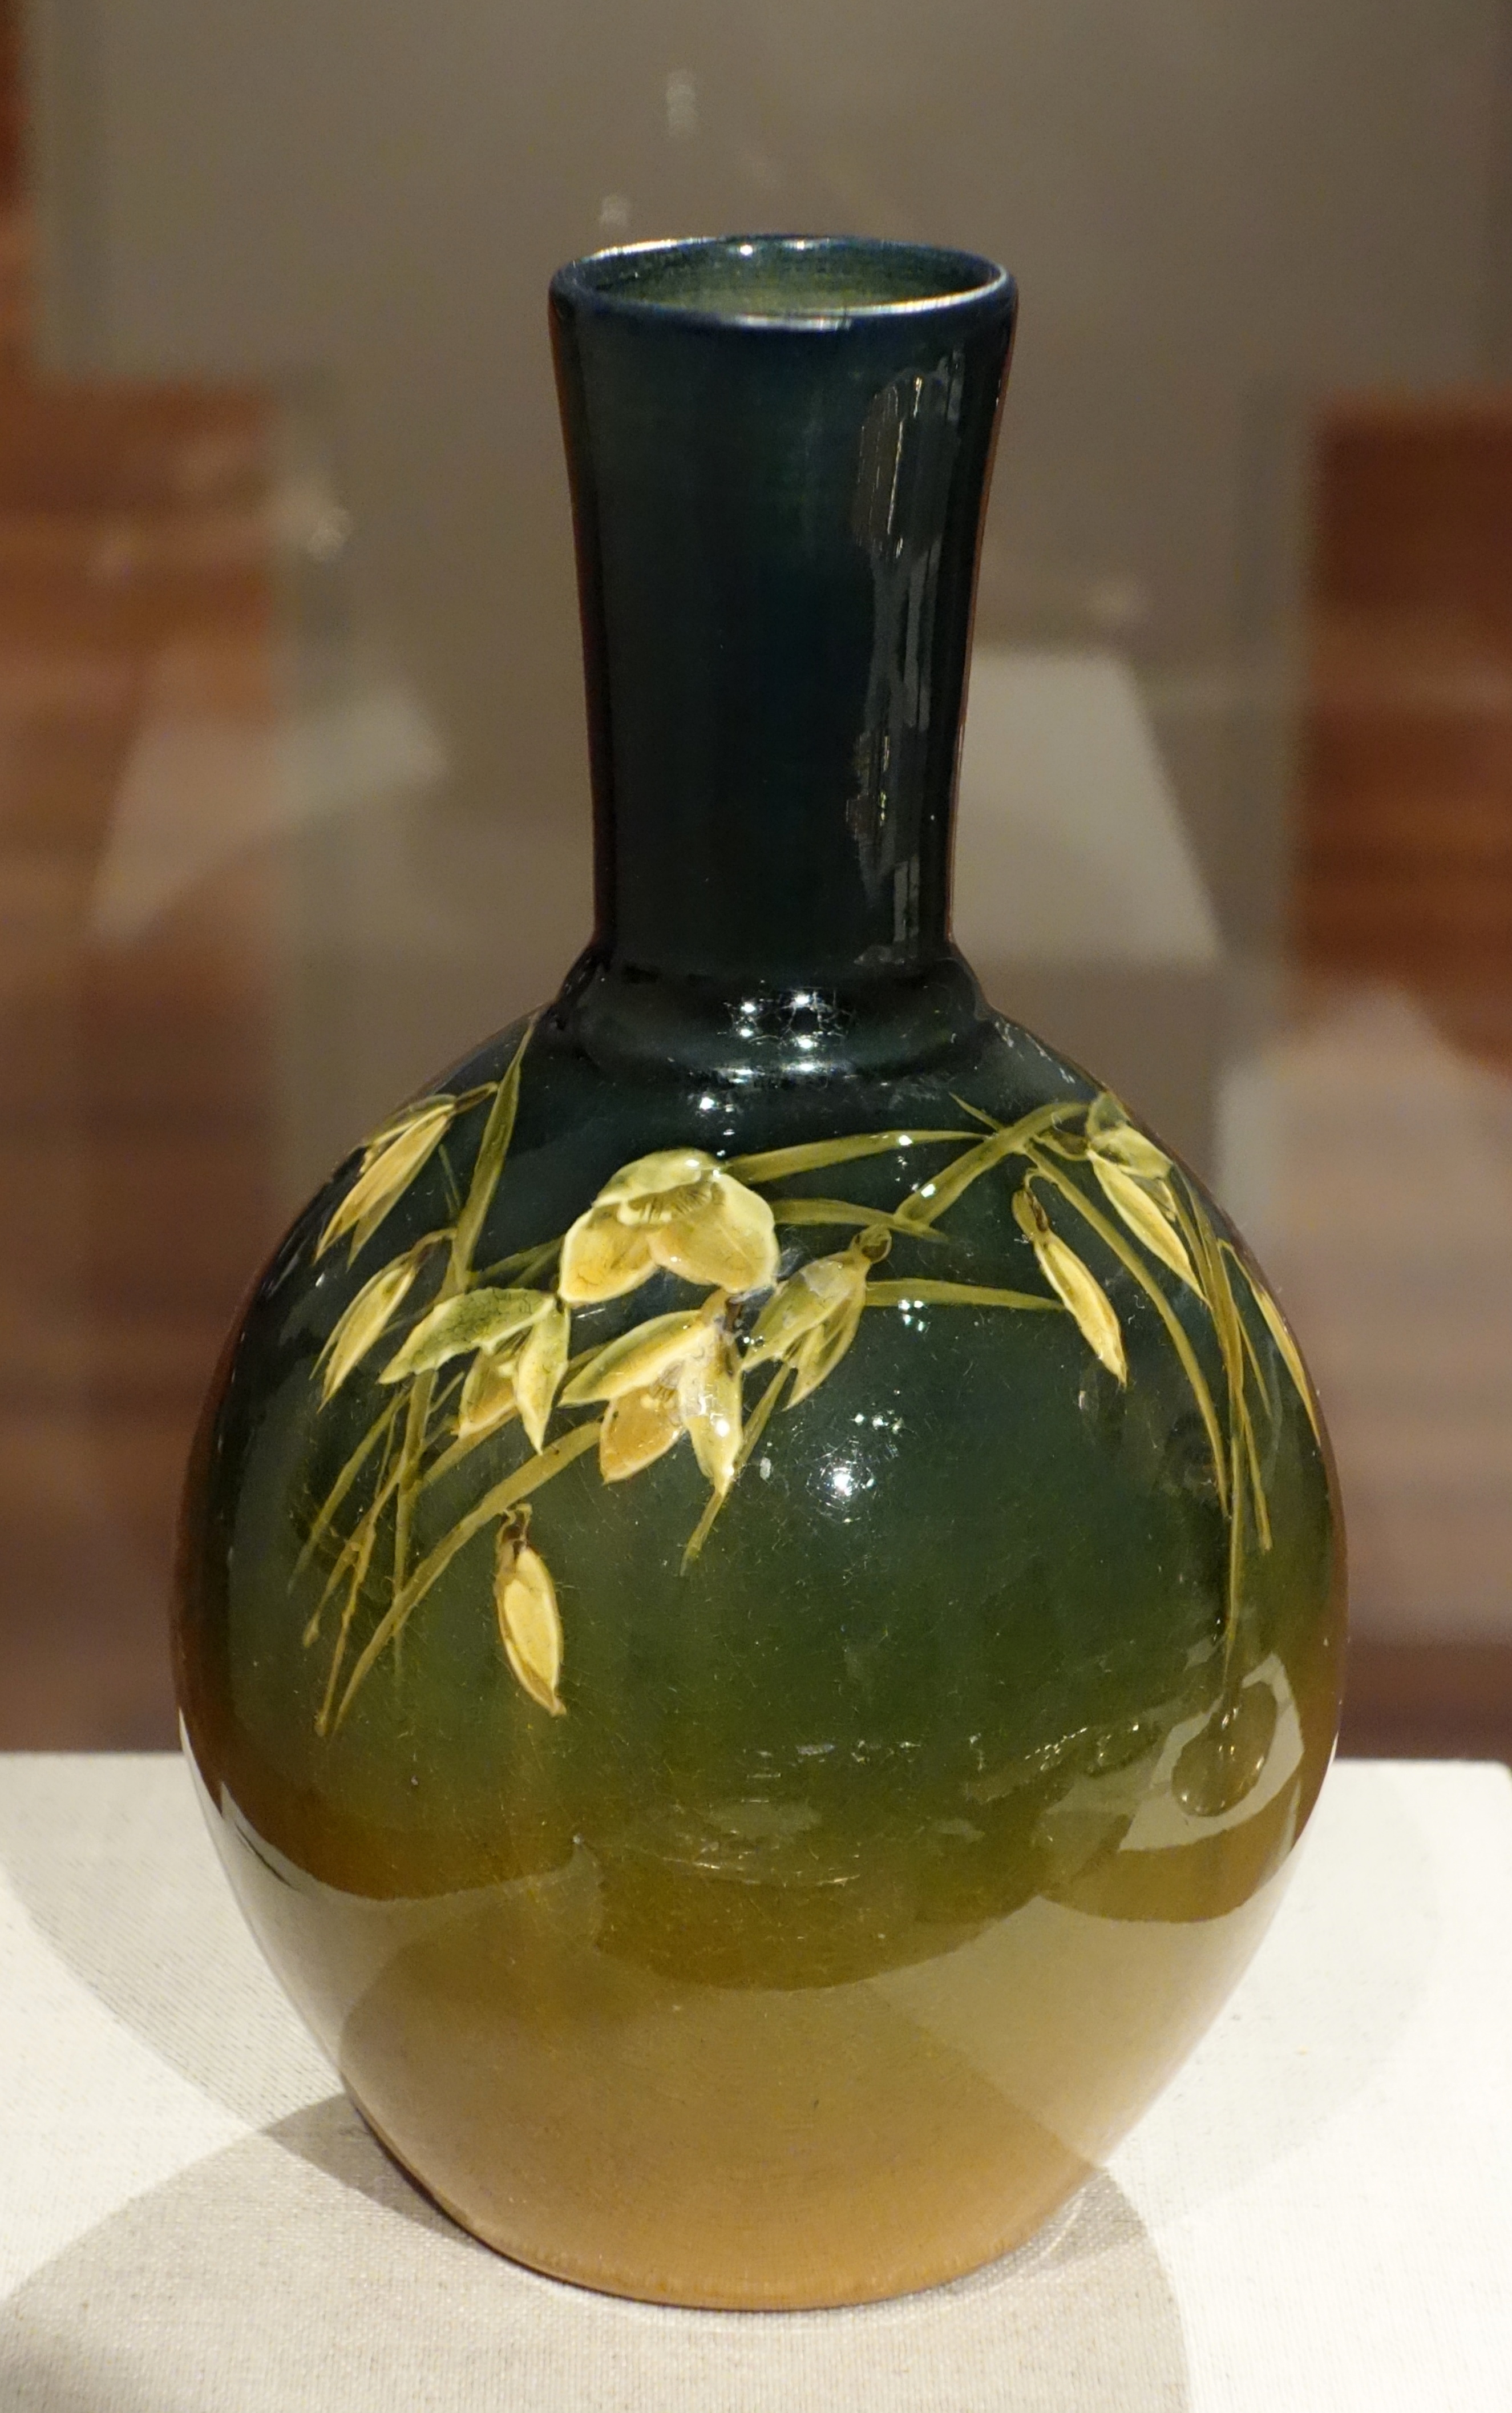 American art pottery - Wikipedia